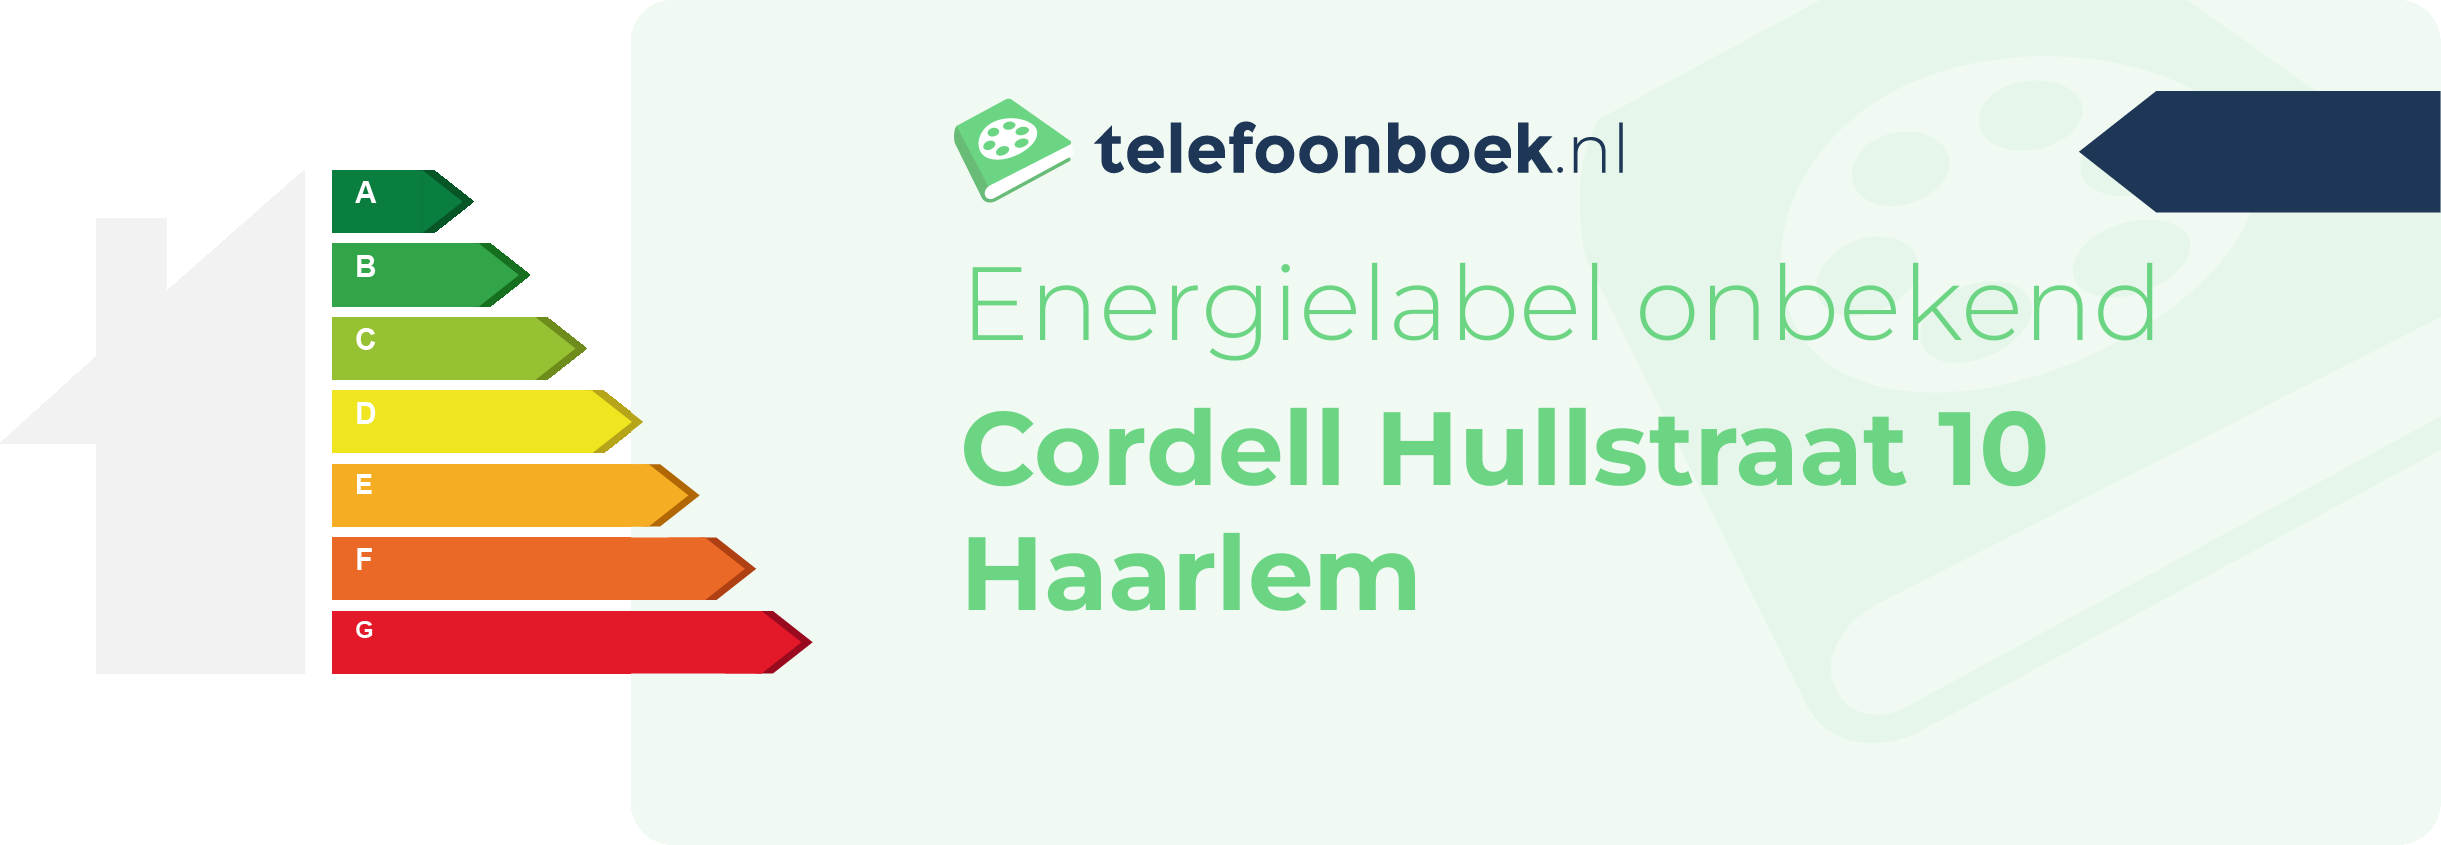 Energielabel Cordell Hullstraat 10 Haarlem